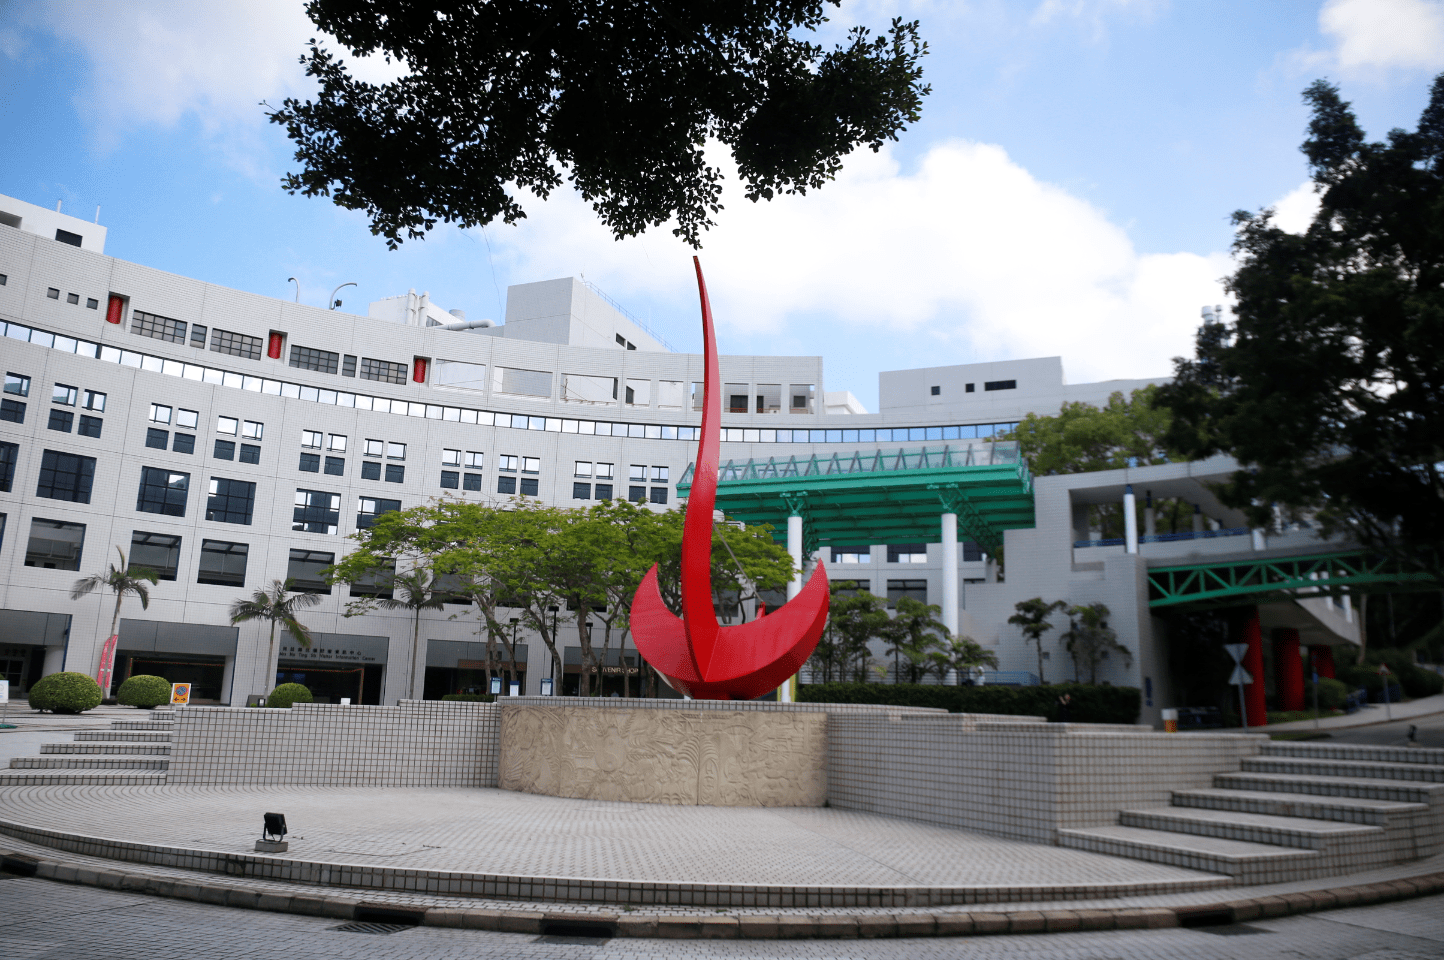 香港科技大学校门图片